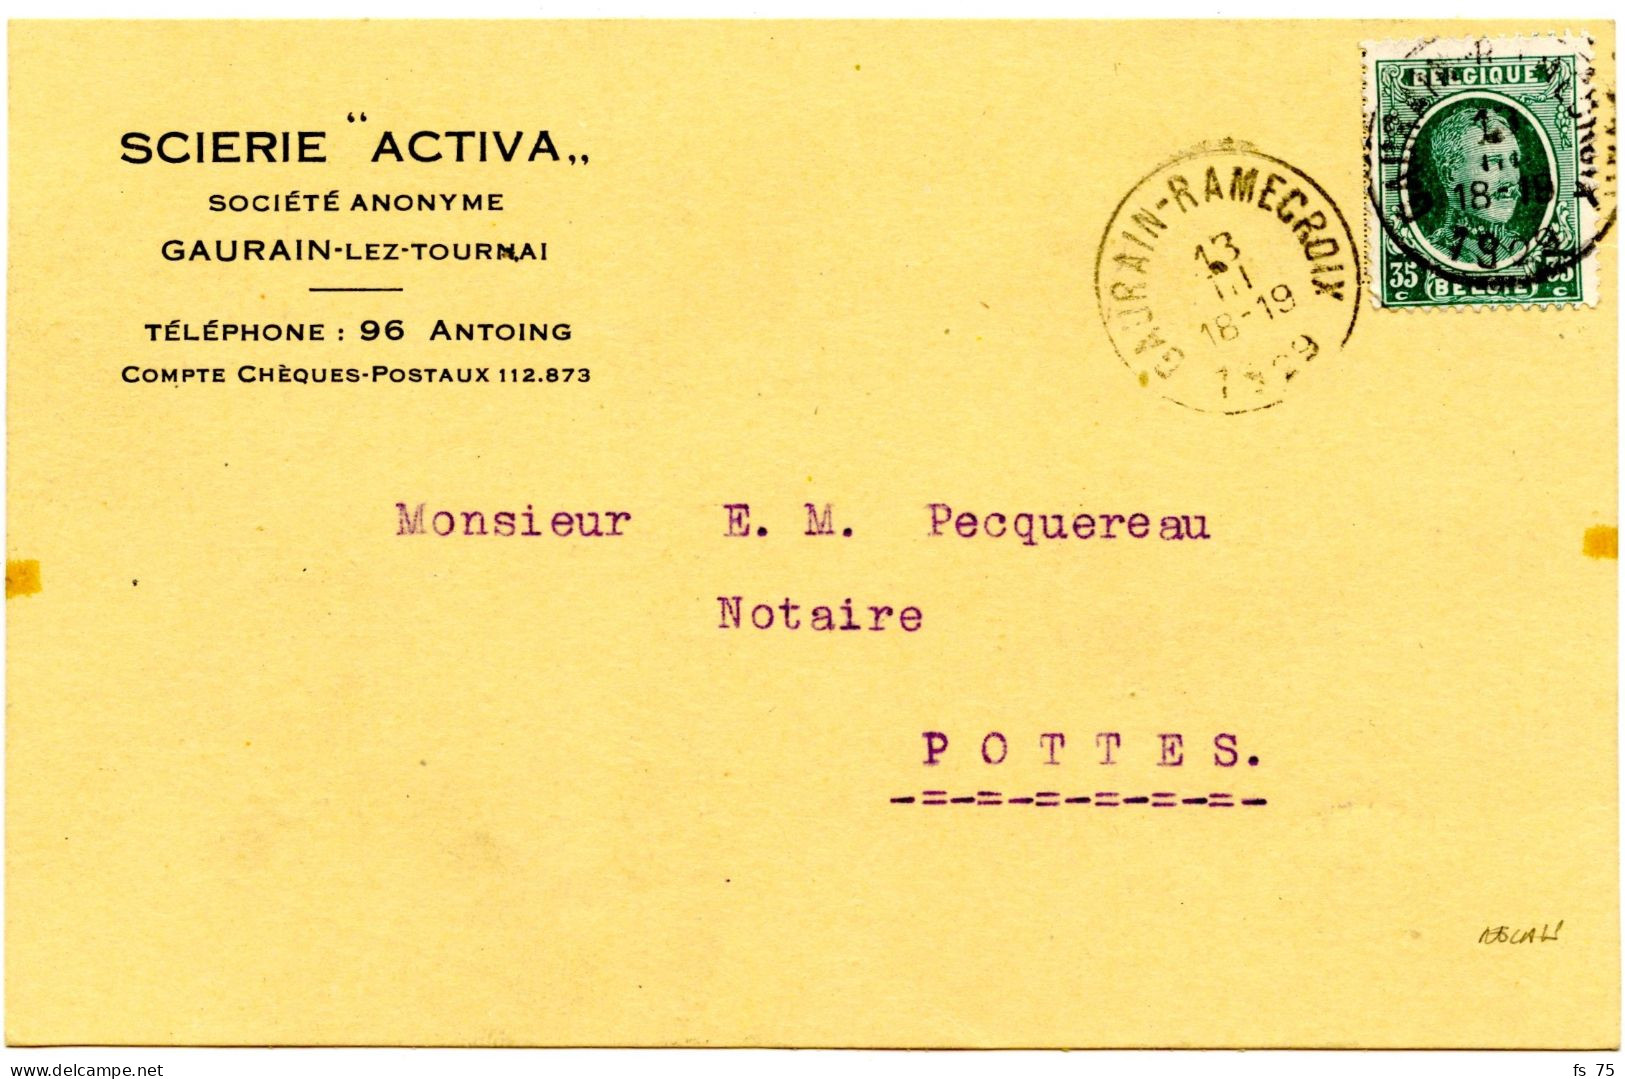 BELGIQUE - COB 254 SIMPLE CERCLE RELAIS A ETOILES GAURAIN RAMECROIX SUR CARTE POSTALE, 1929 - Postmarks With Stars